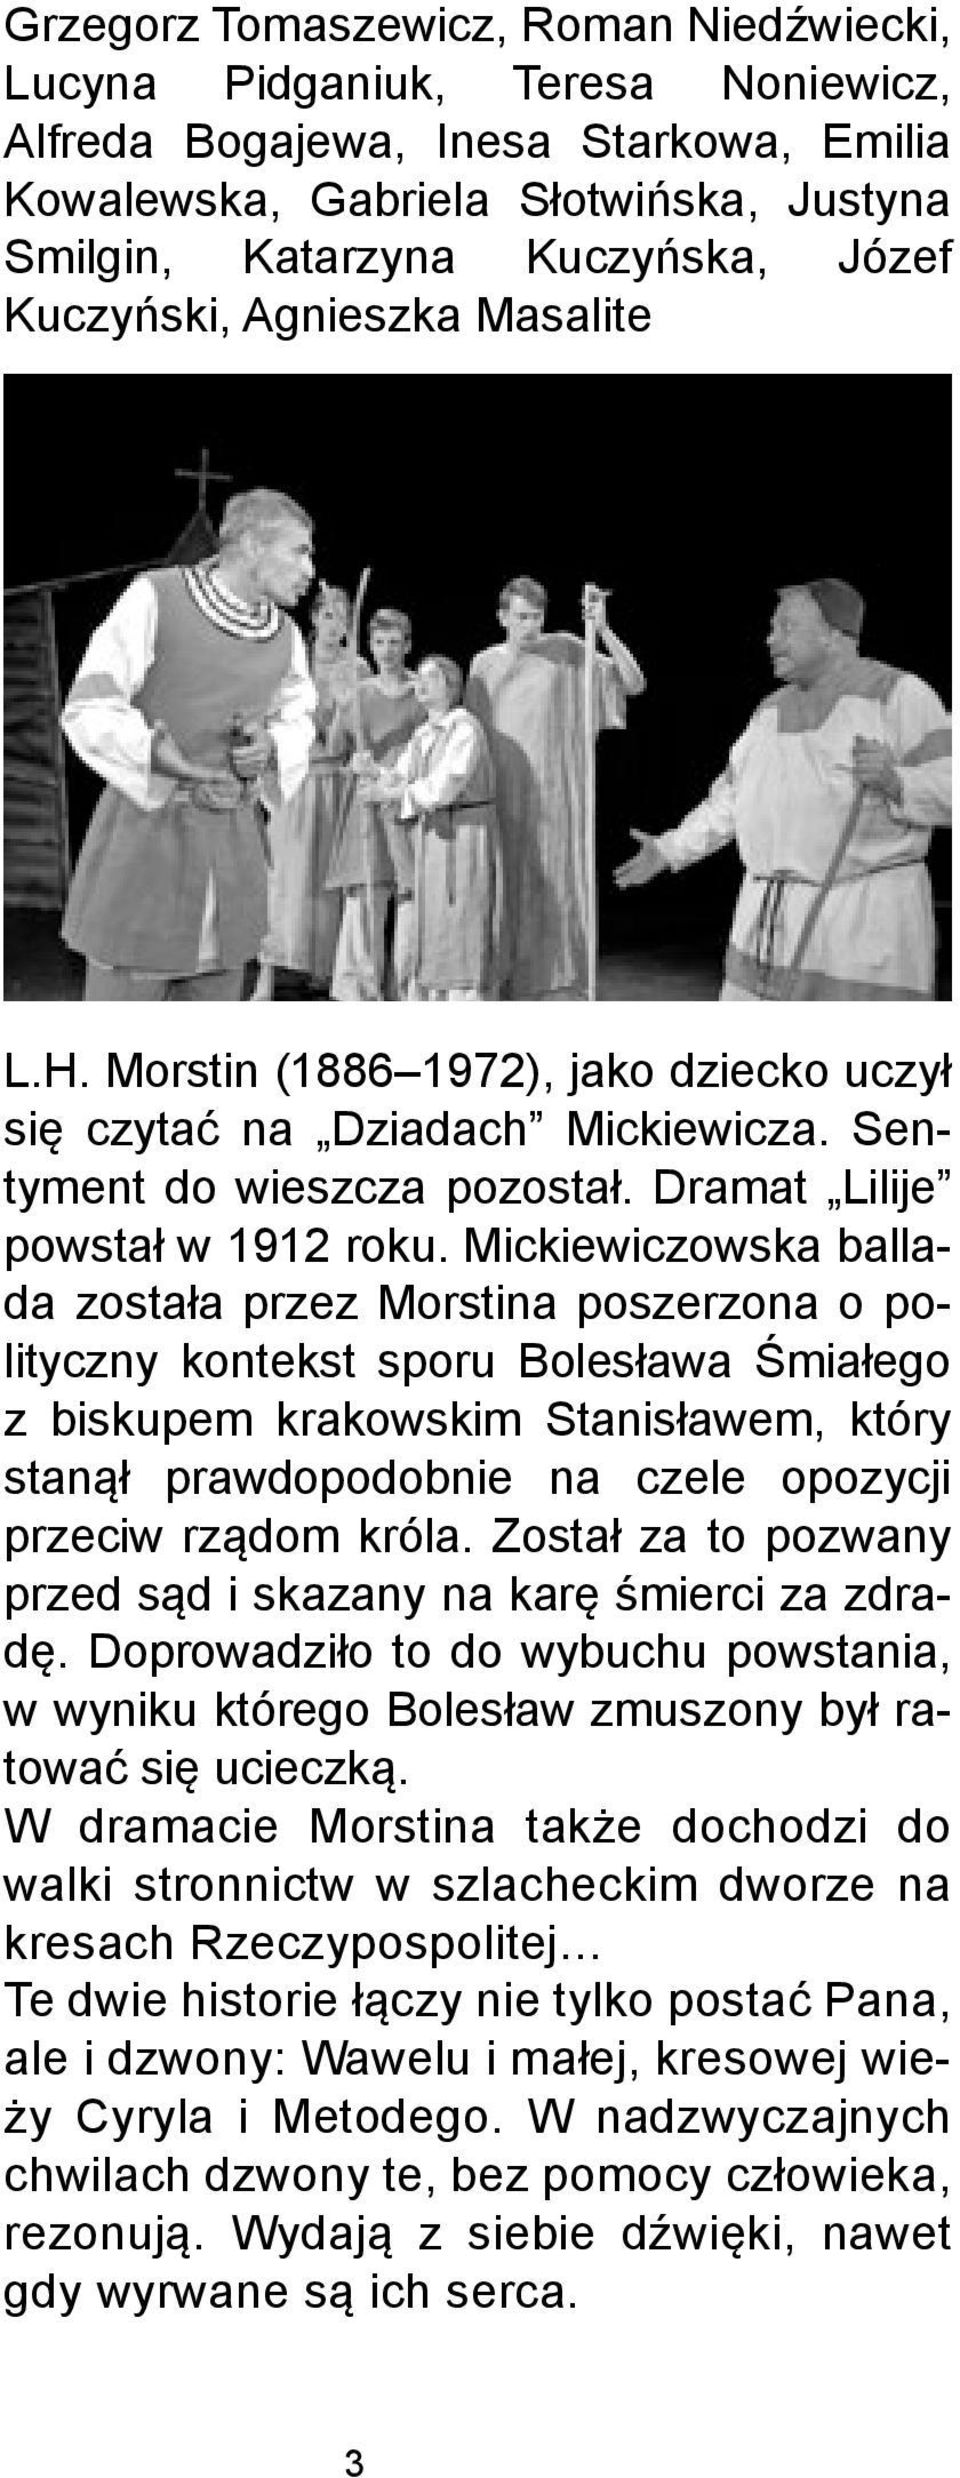 Mickiewiczowska ballada została przez Morstina poszerzona o polityczny kontekst sporu Bolesława Śmiałego z biskupem krakowskim Stanisławem, który stanął prawdopodobnie na czele opozycji przeciw